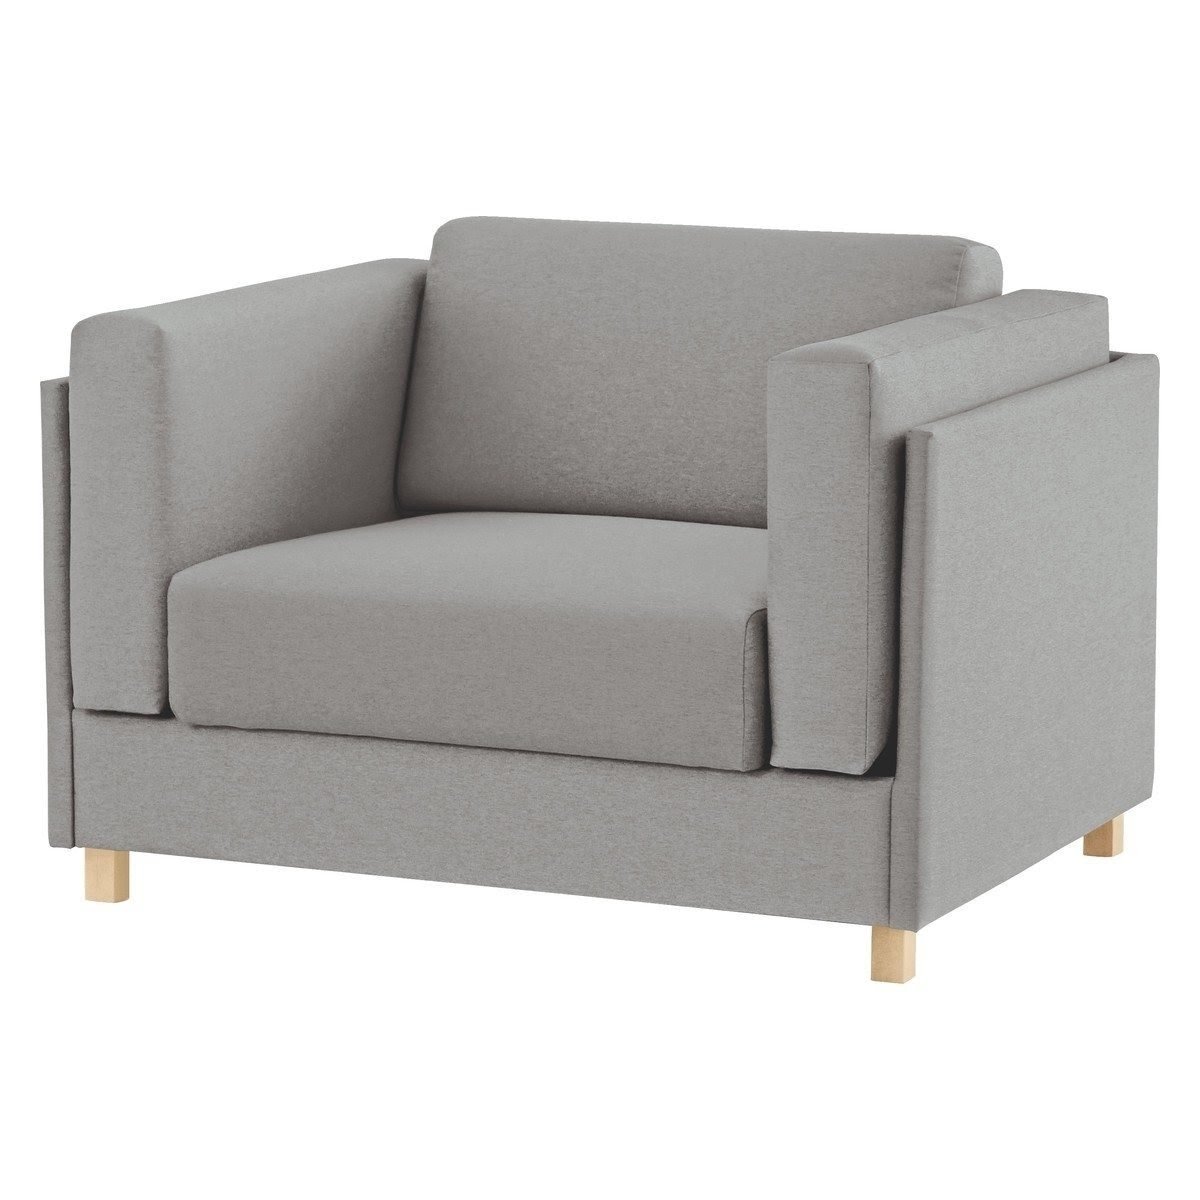 one sofa chair